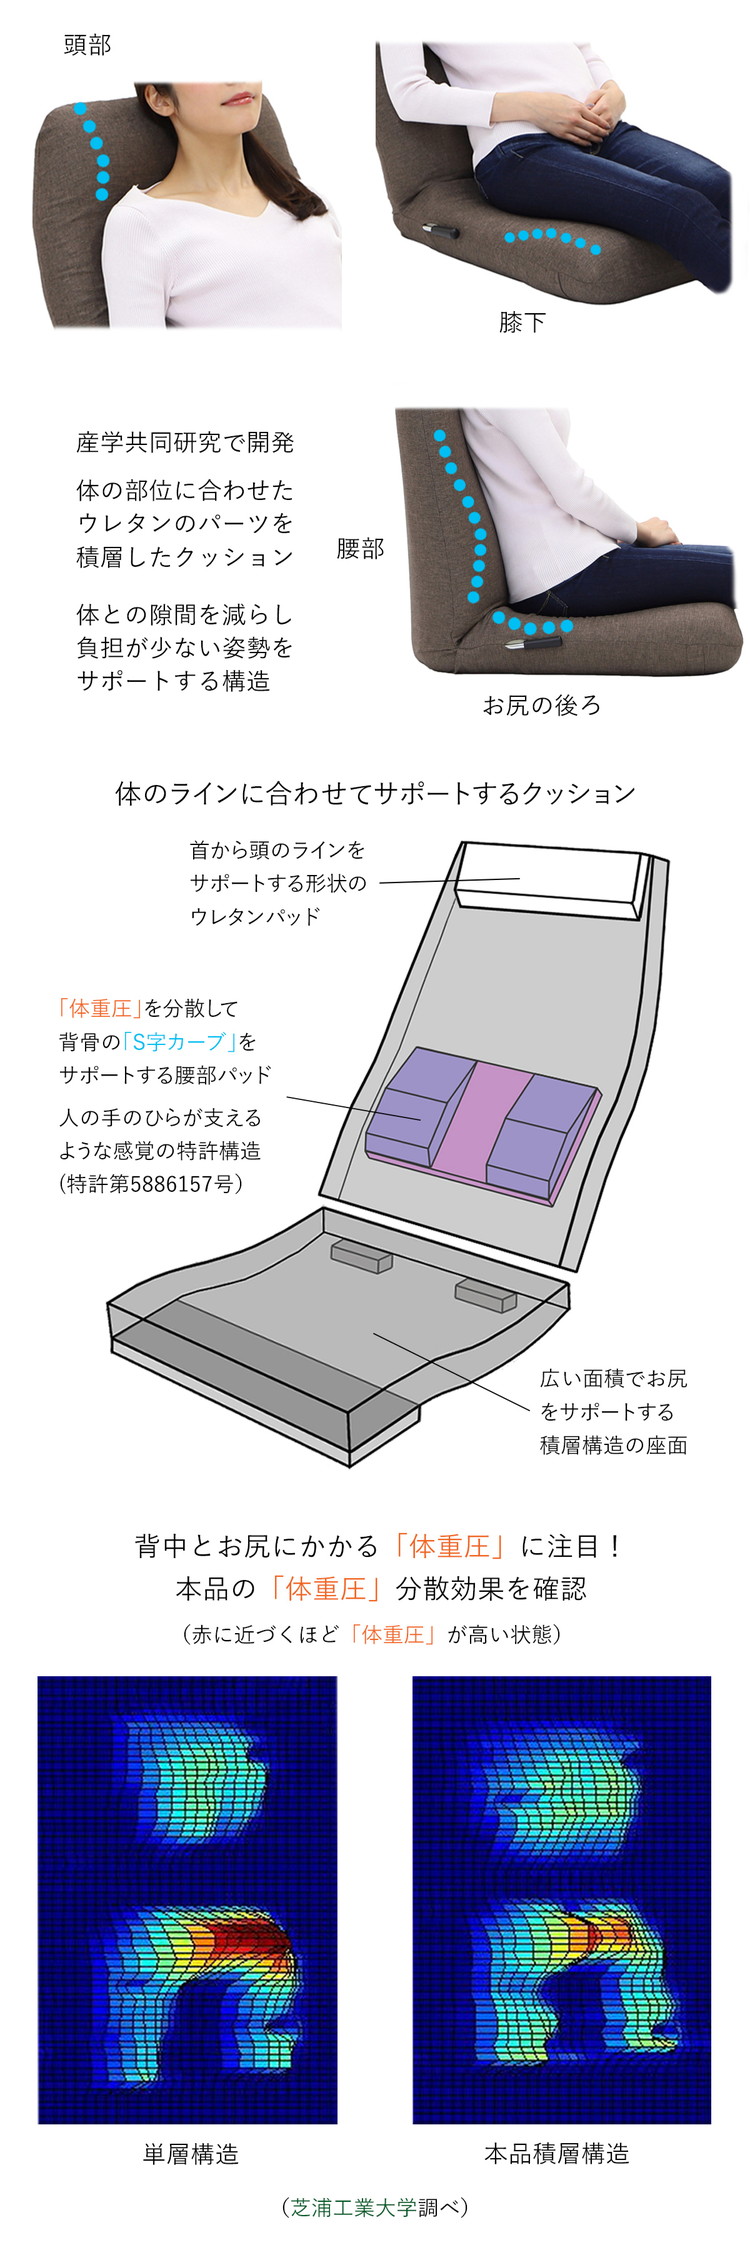 日本製 産学連携 レバー式 ハイバック 座椅子]椅子 イス チェア フロア